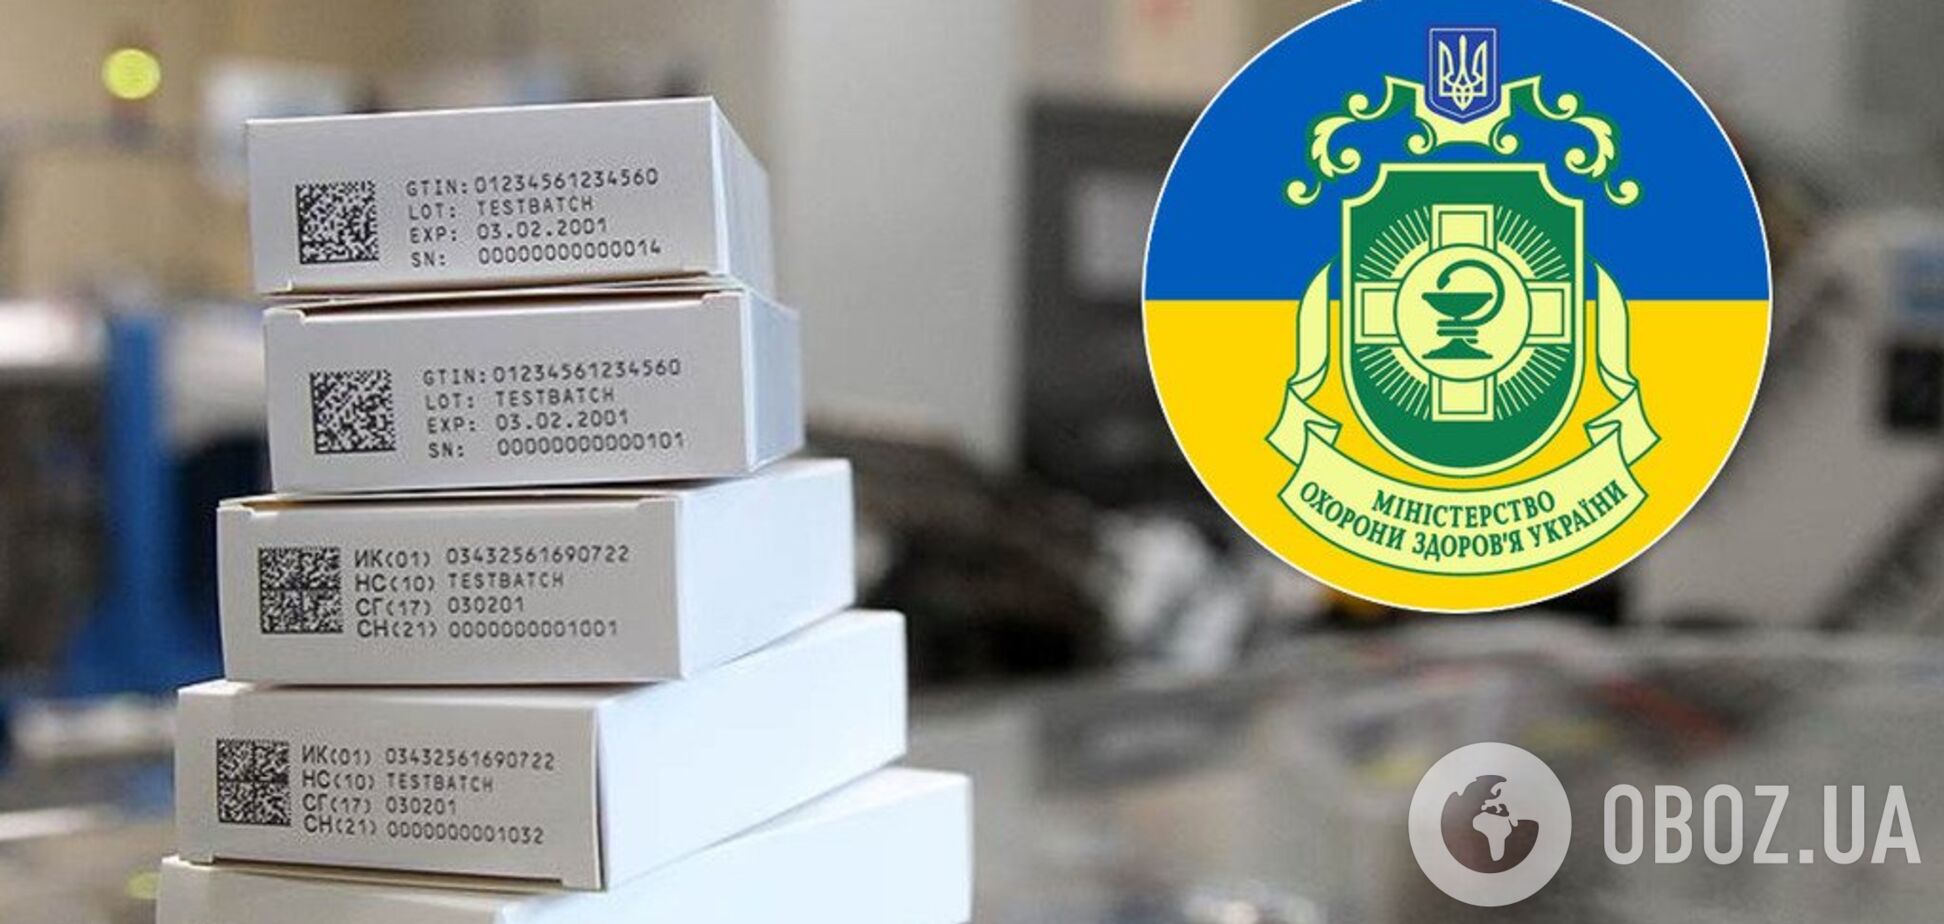 В Україні оголосили 'війну' фальшивим лікам: що це означає